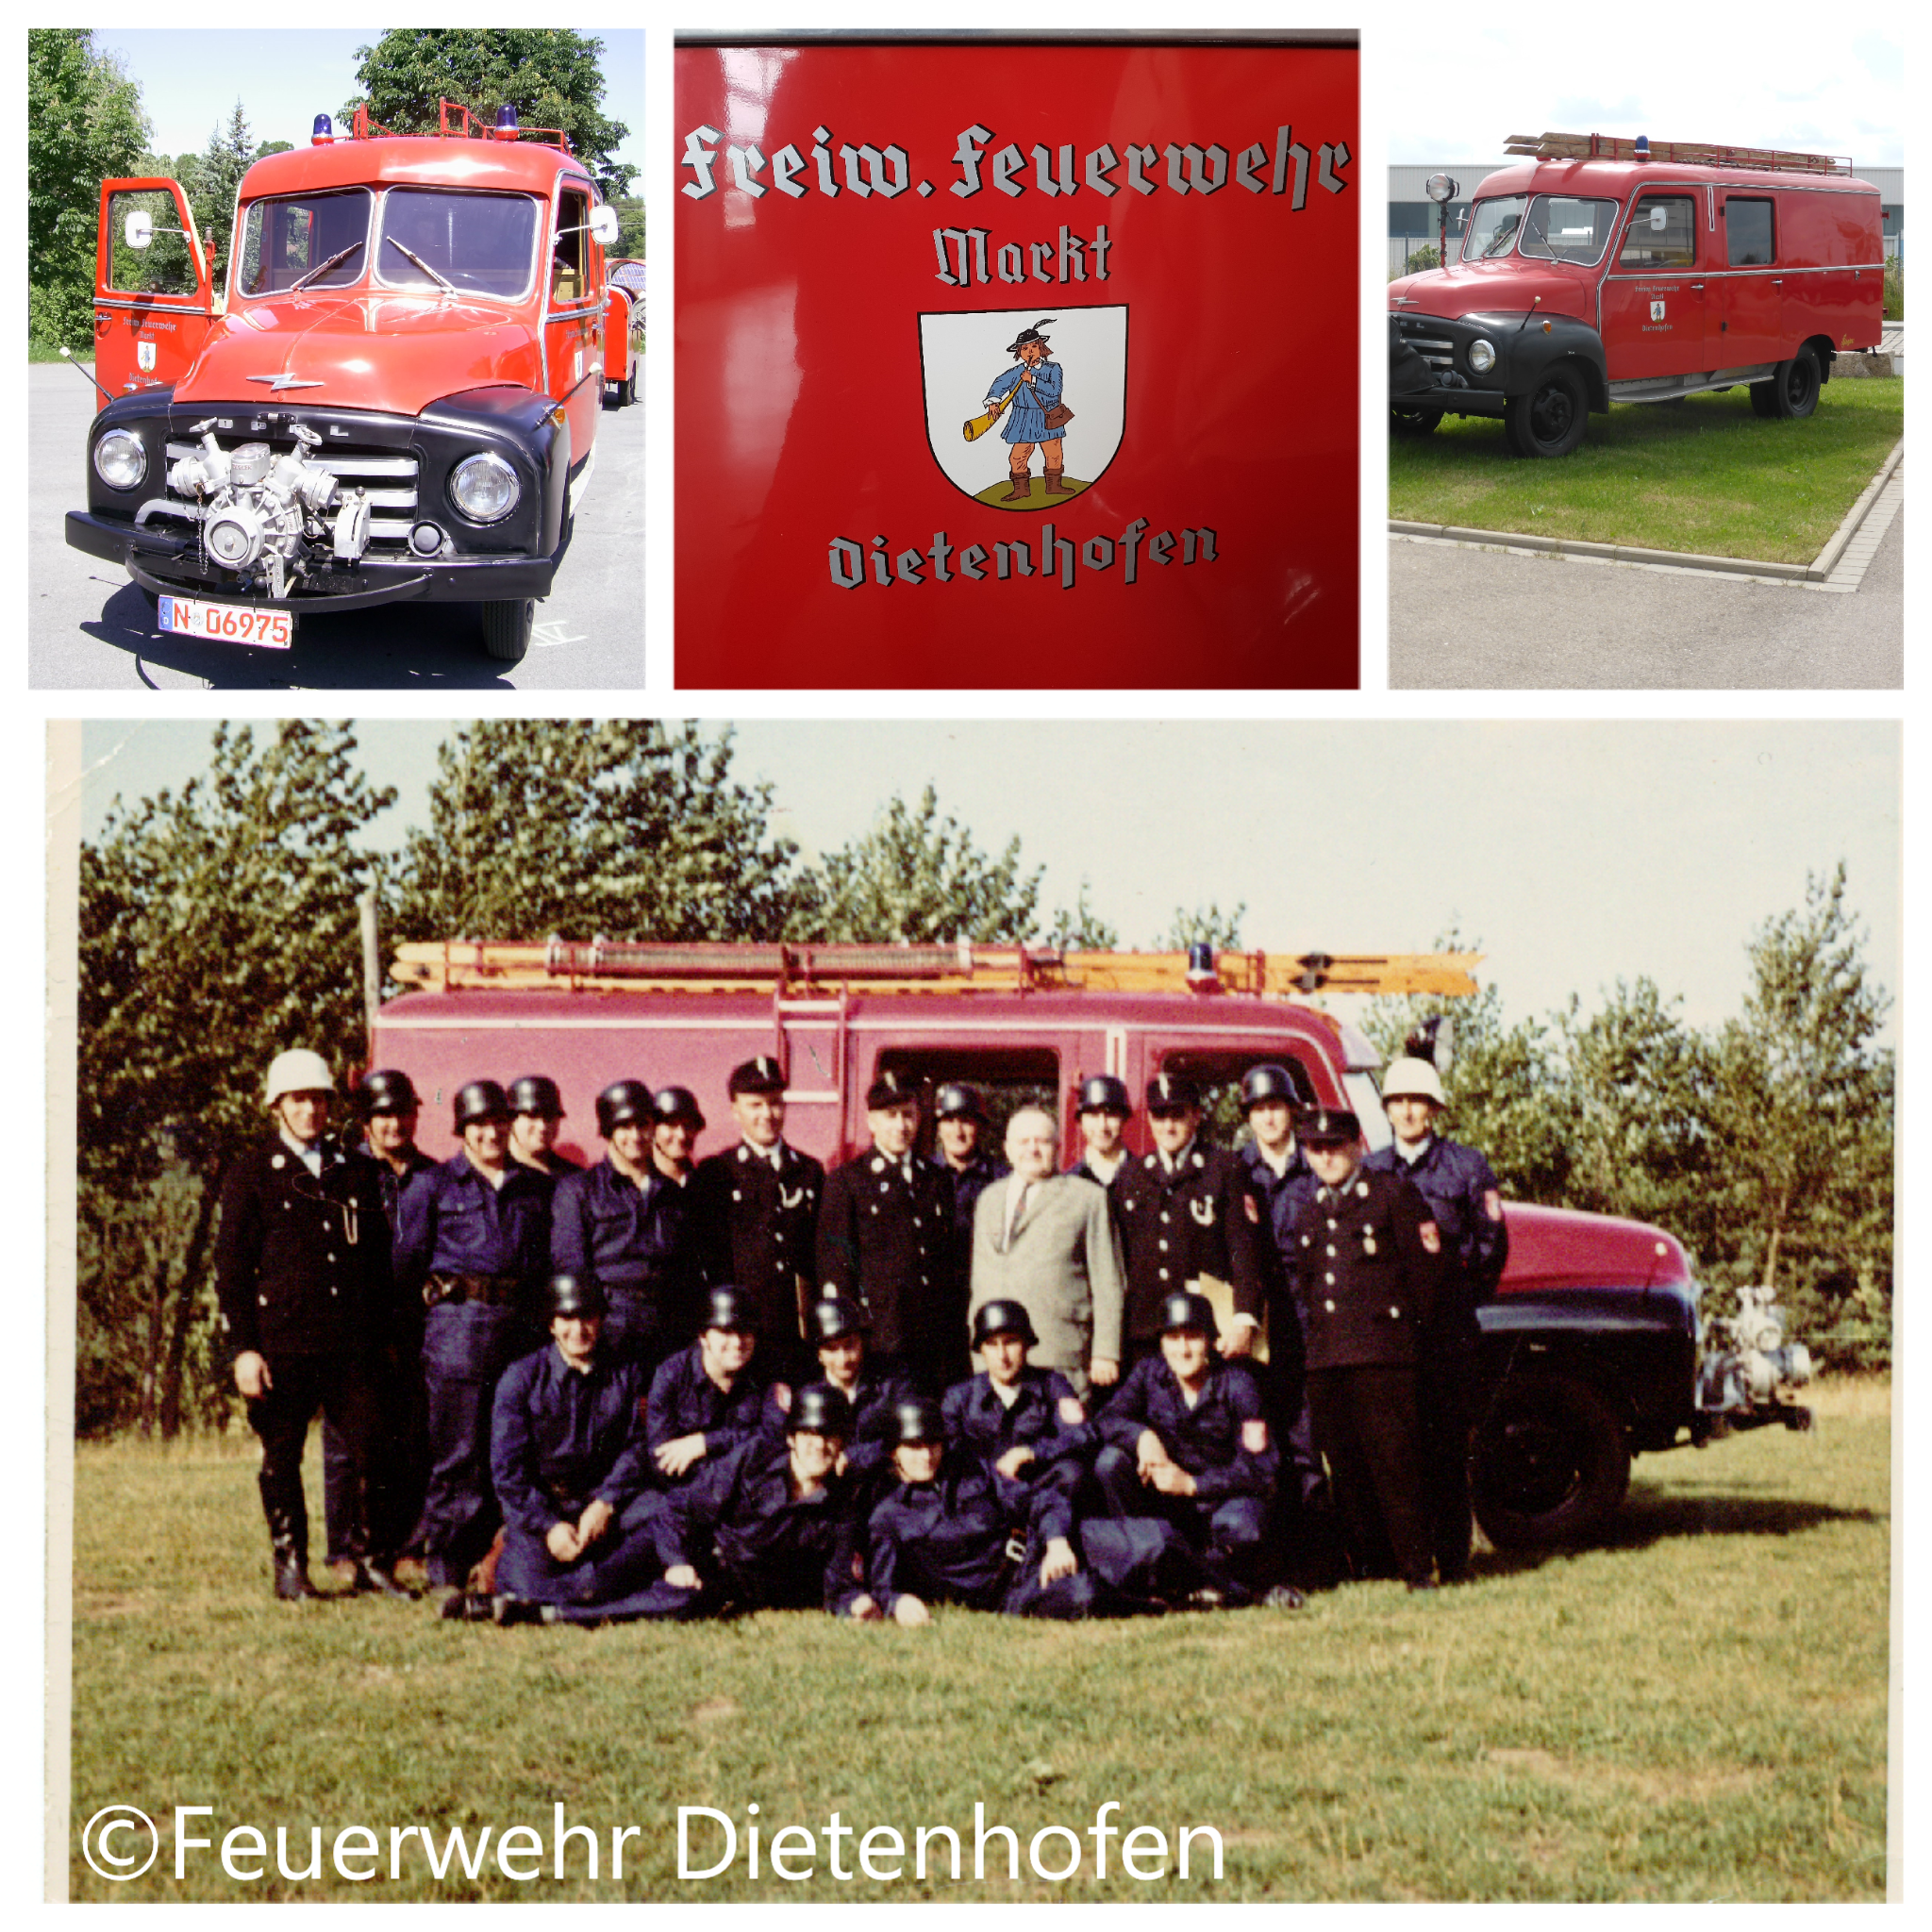 Die Feuerwehr Dietenhofen im Wandel der Zeit – Das erste Löschgruppenfahrzeug in Dietenhofen